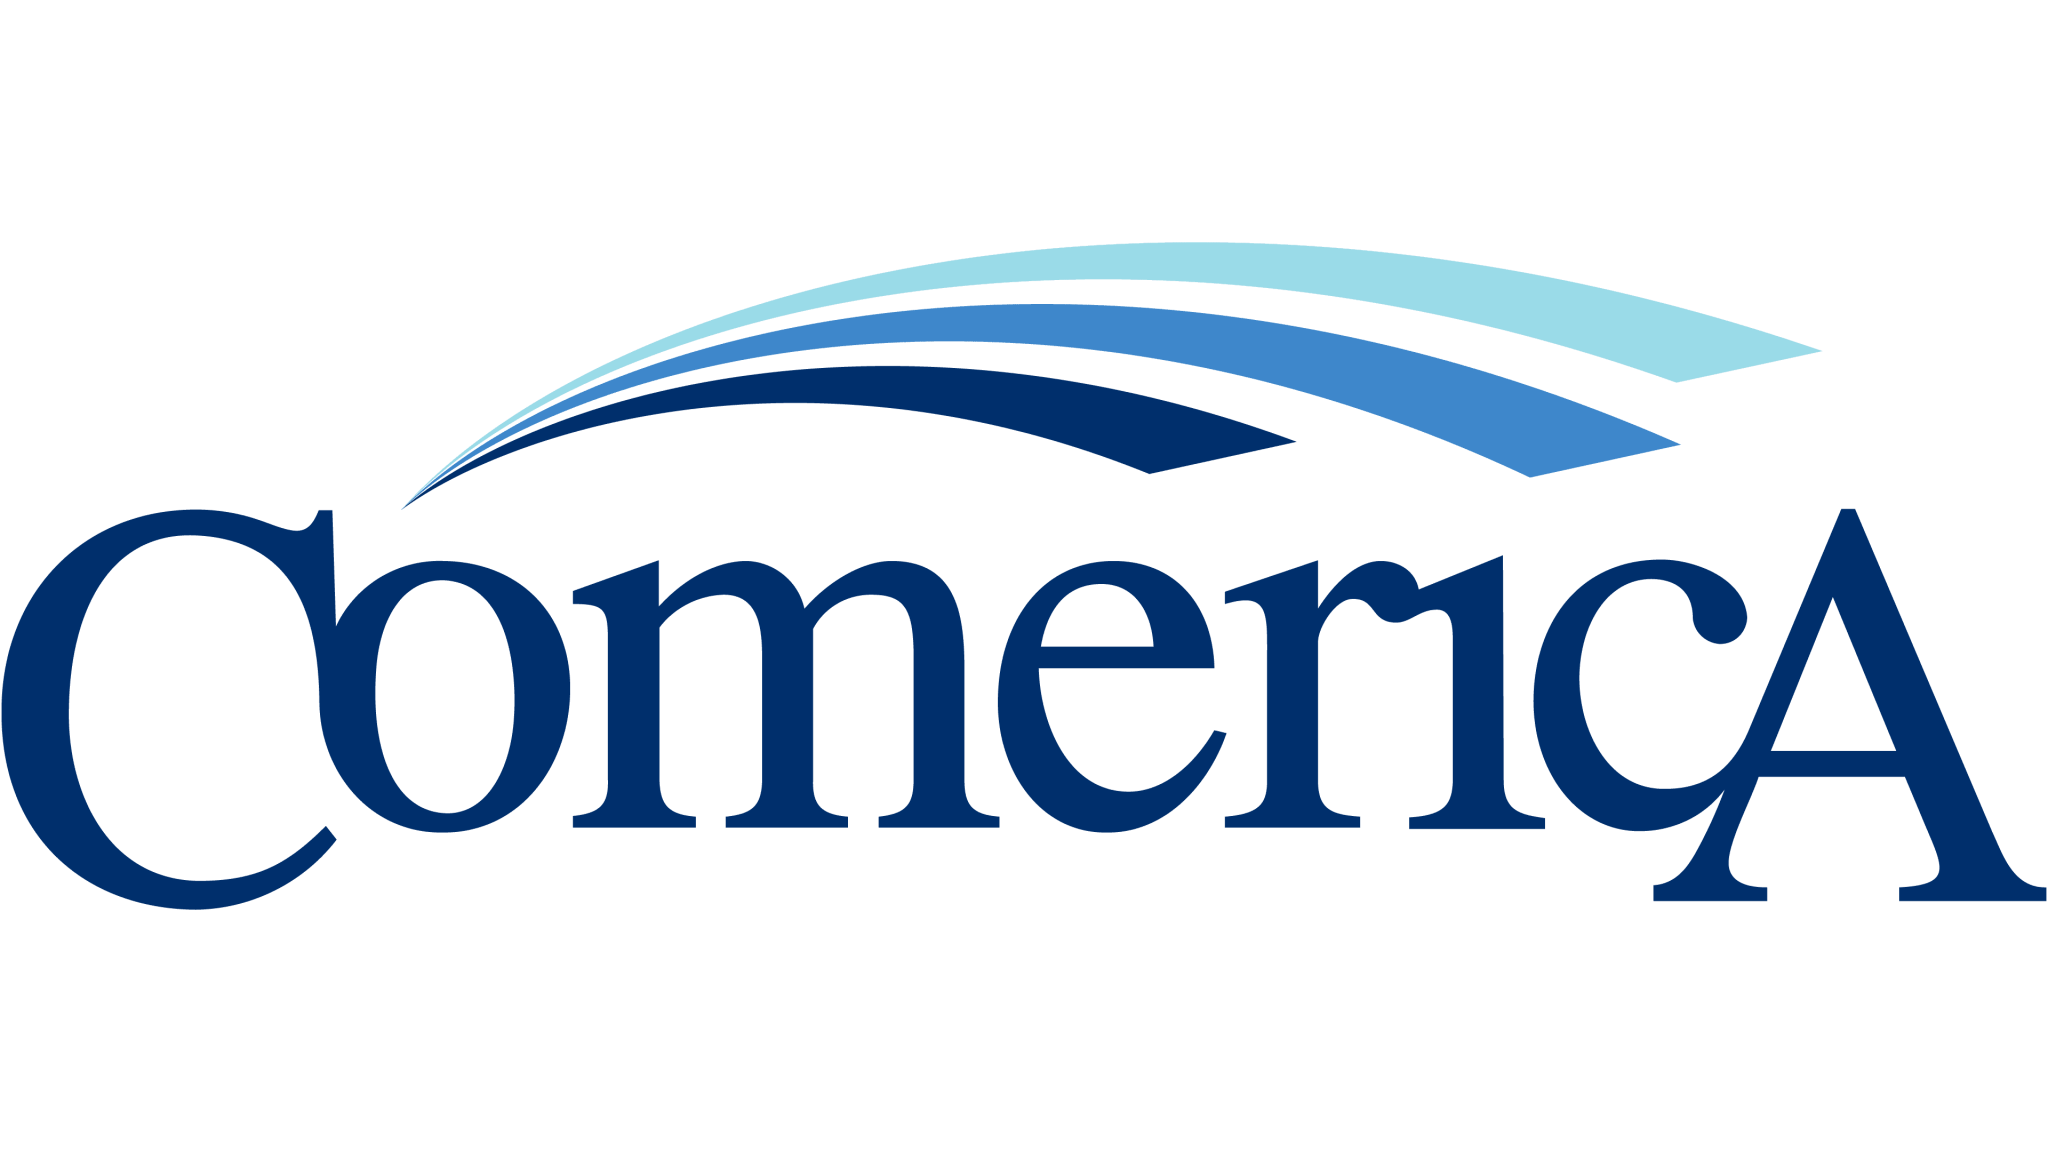 Comerica-logo-2048x1152